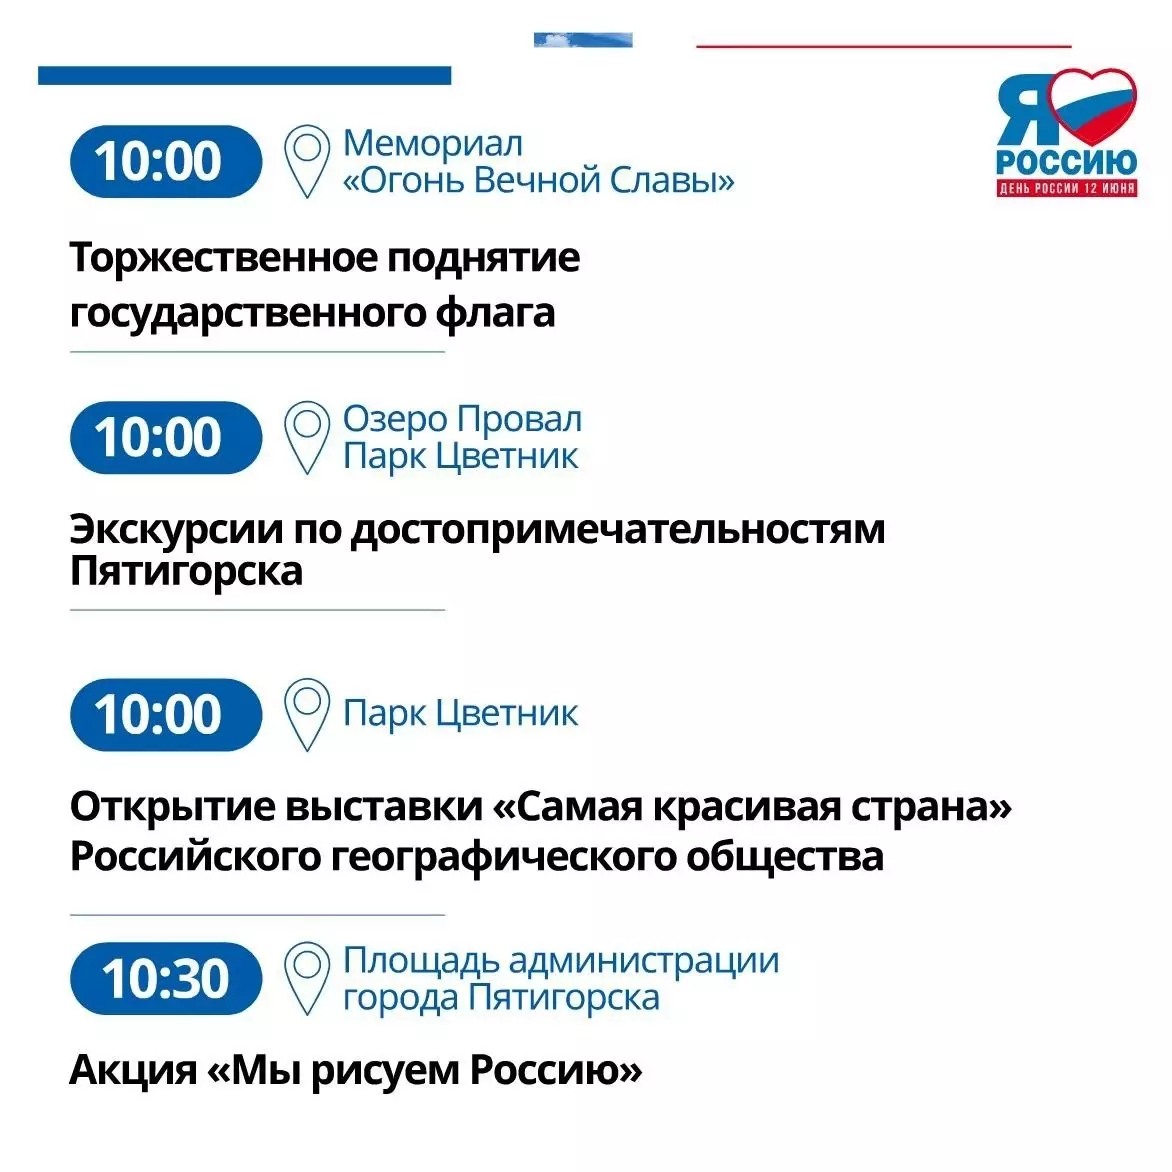 Программу мероприятий составили в Пятигорске на День России